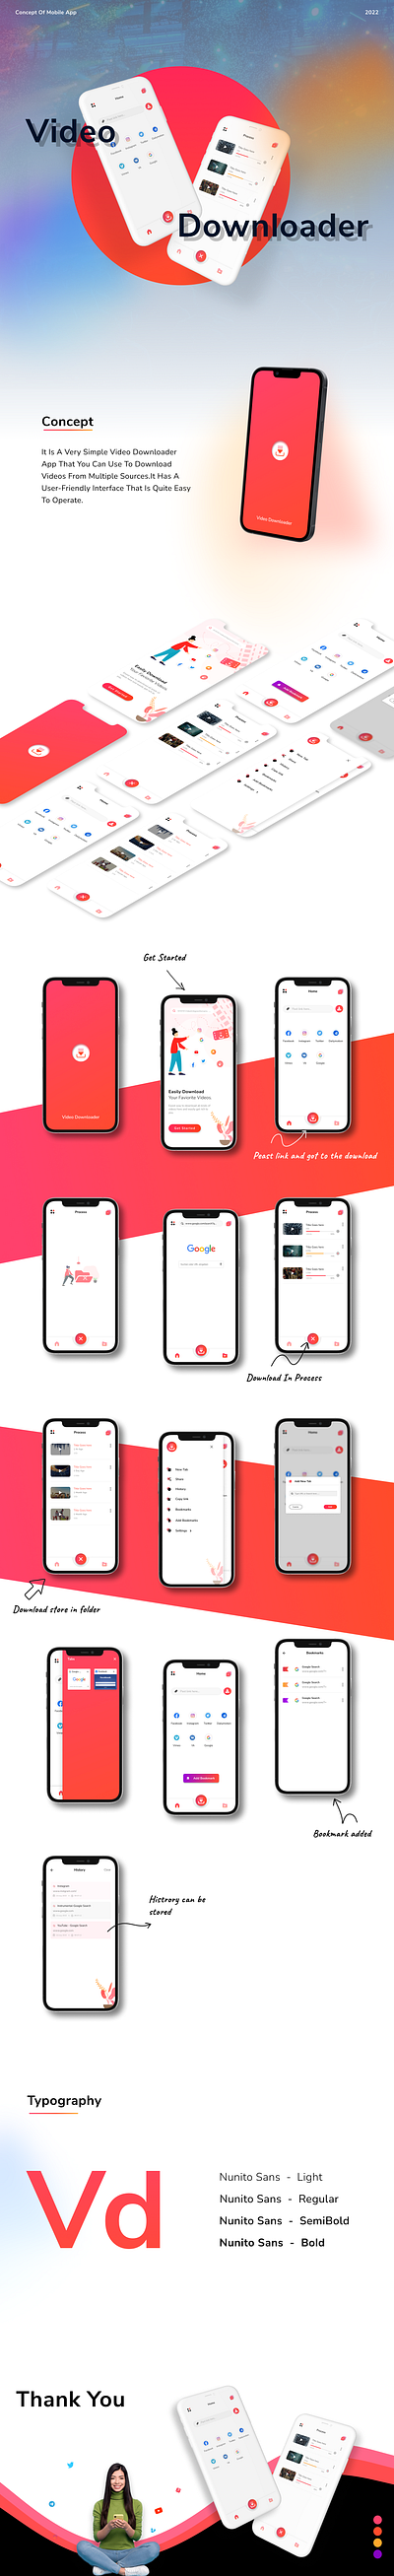 Download App - UI/UX Concept 3d animation app branding design downloader app logo mobile app mobile app design mockup motion graphics ui ux video downloader